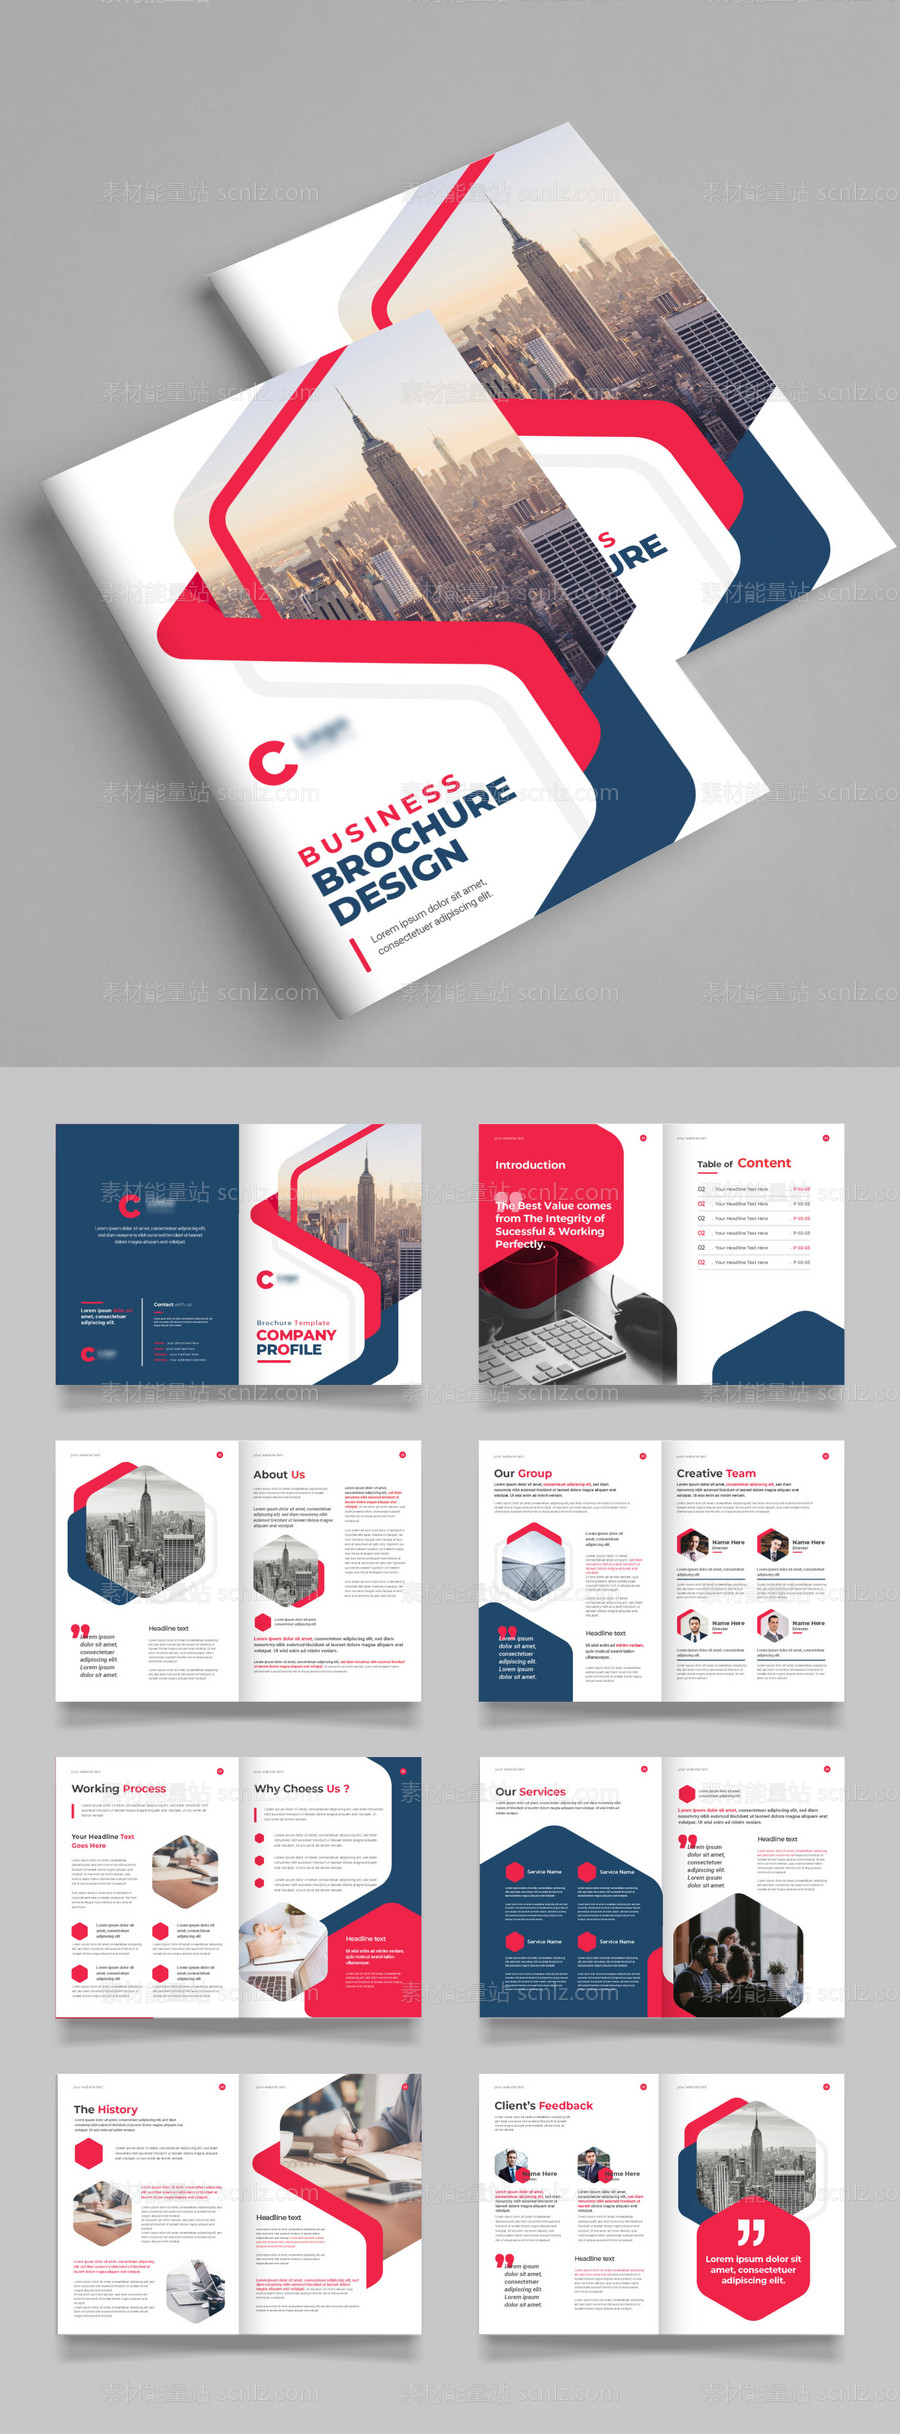 素材能量站-红色高级公司简介宣传册设计模板